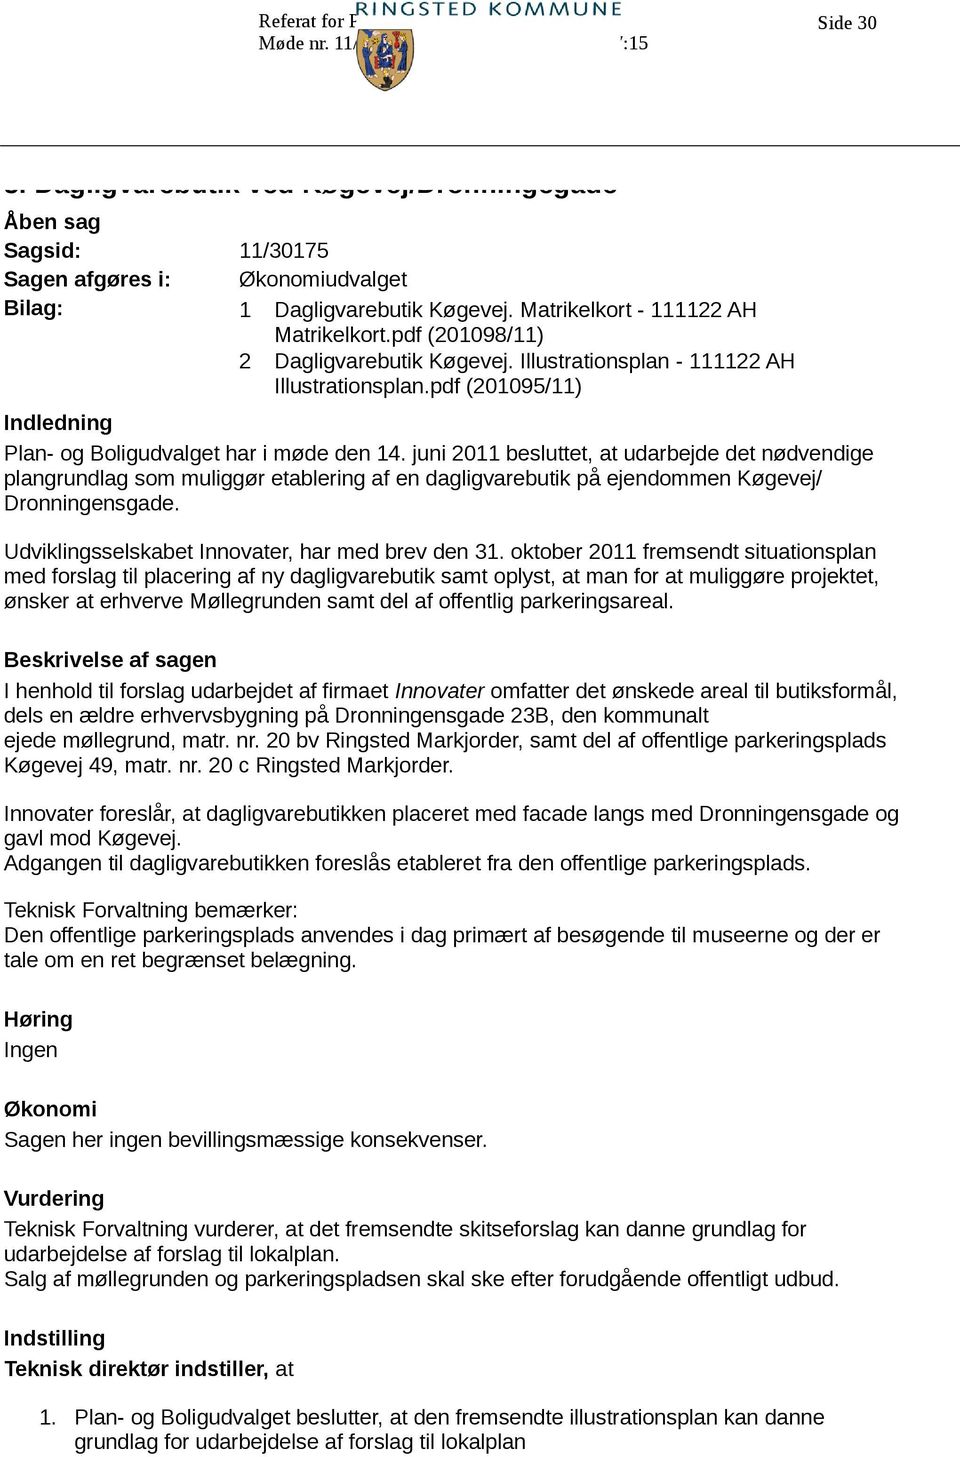 juni 2011 besluttet, at udarbejde det nødvendige plangrundlag som muliggør etablering af en dagligvarebutik på ejendommen Køgevej/ Dronningensgade. Udviklingsselskabet Innovater, har med brev den 31.